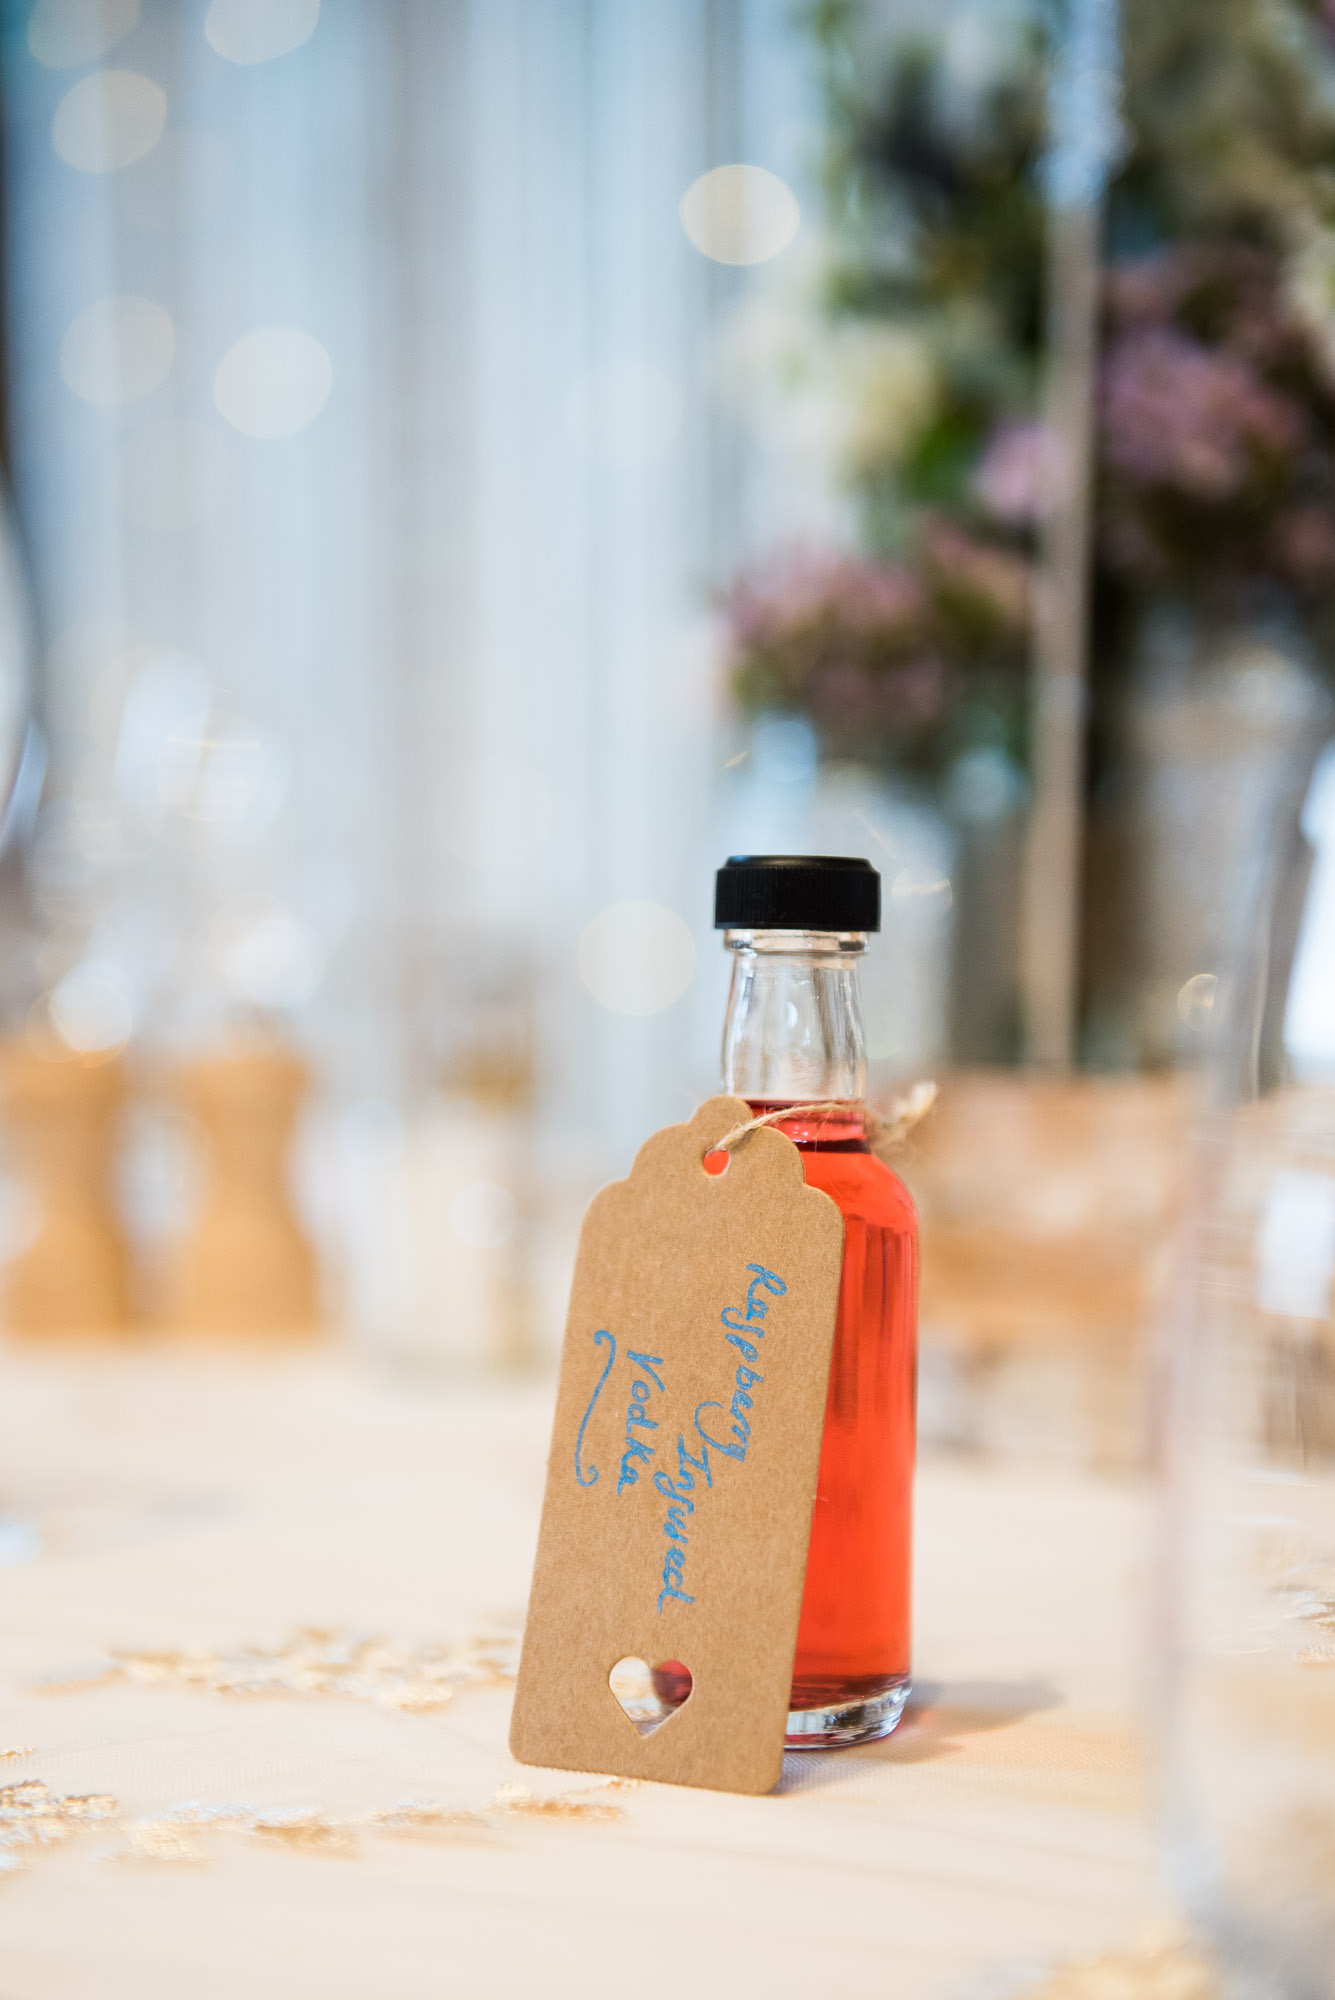 DIY wedding favour of infused vodka bottles